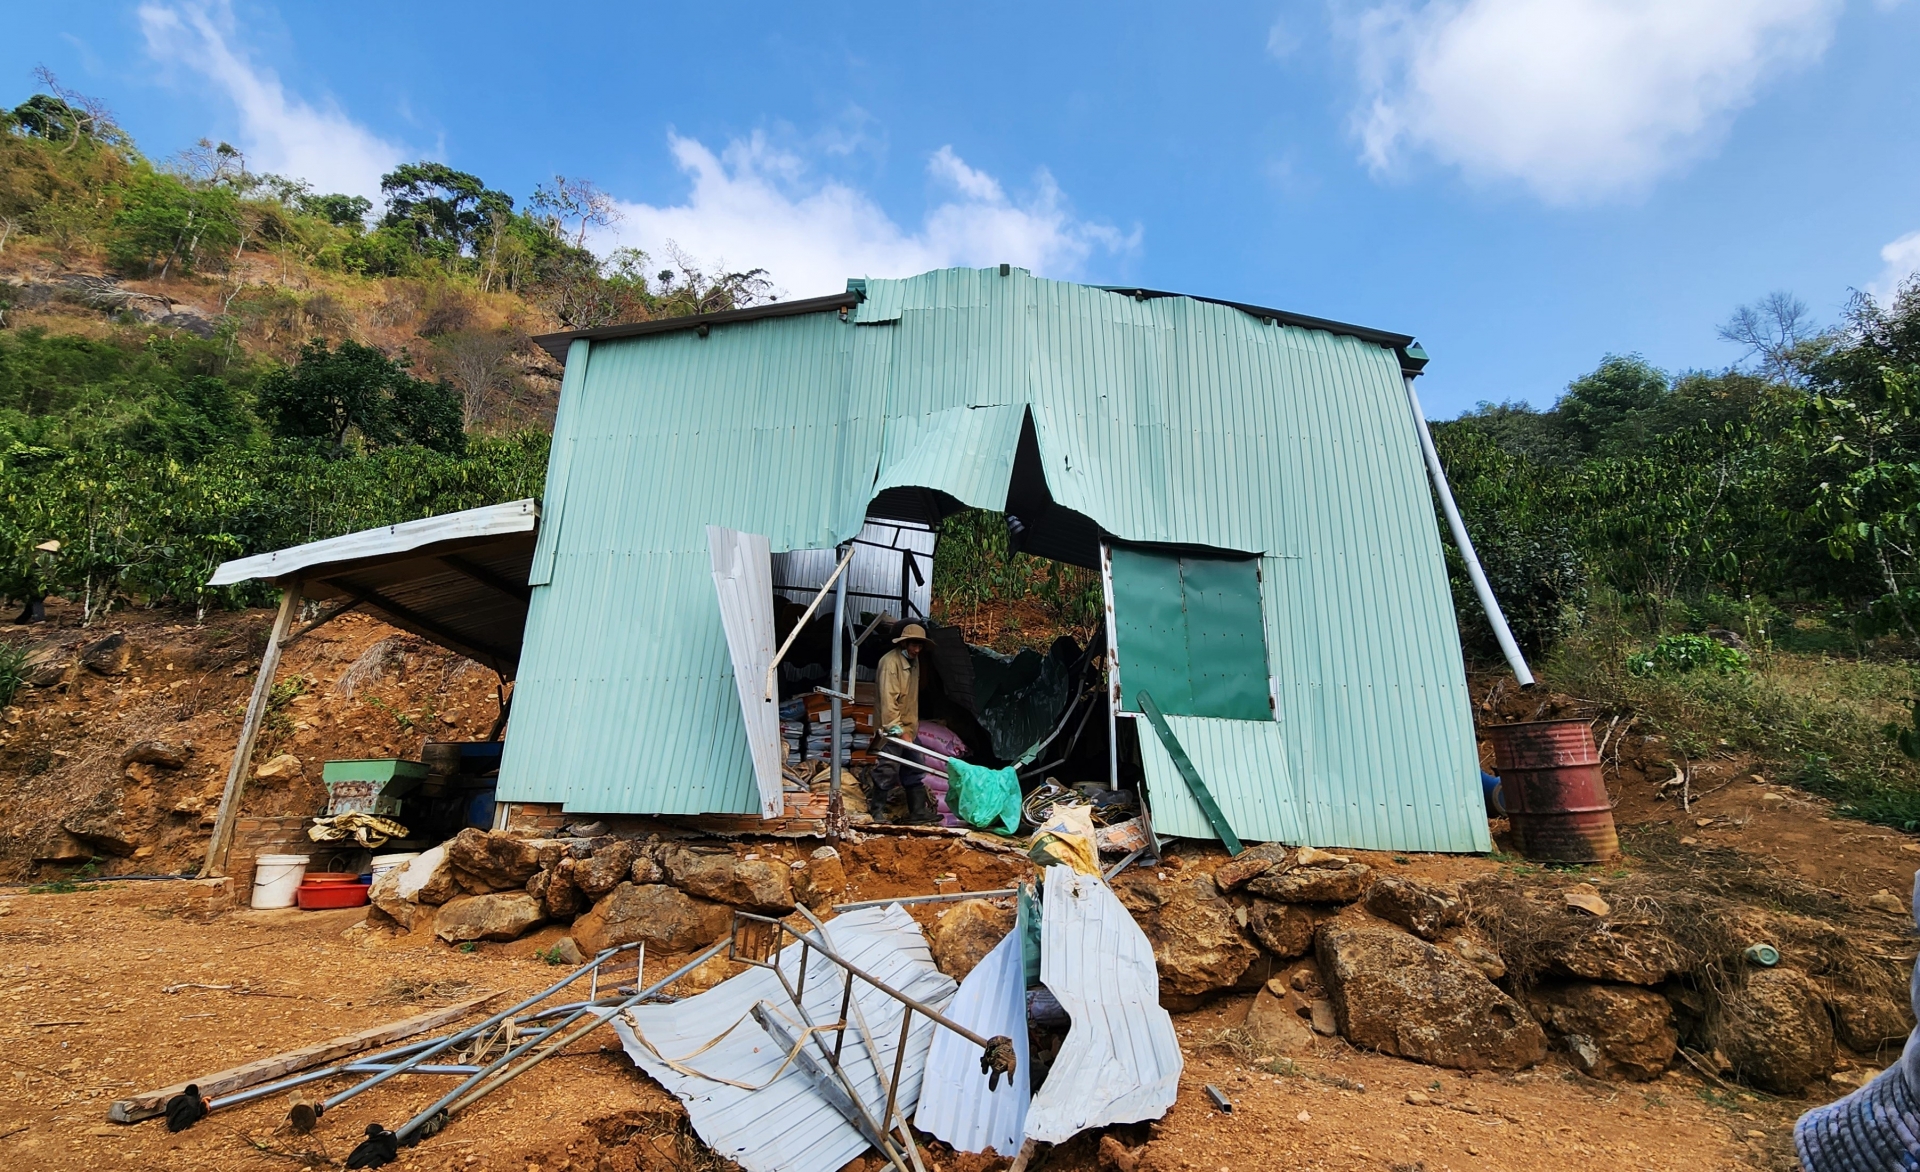 UBND tỉnh chỉ đạo kiểm tra việc nổ mìn tại mỏ đá Thái Sơn gây mất an toàn, ảnh hưởng tài sản của người dân